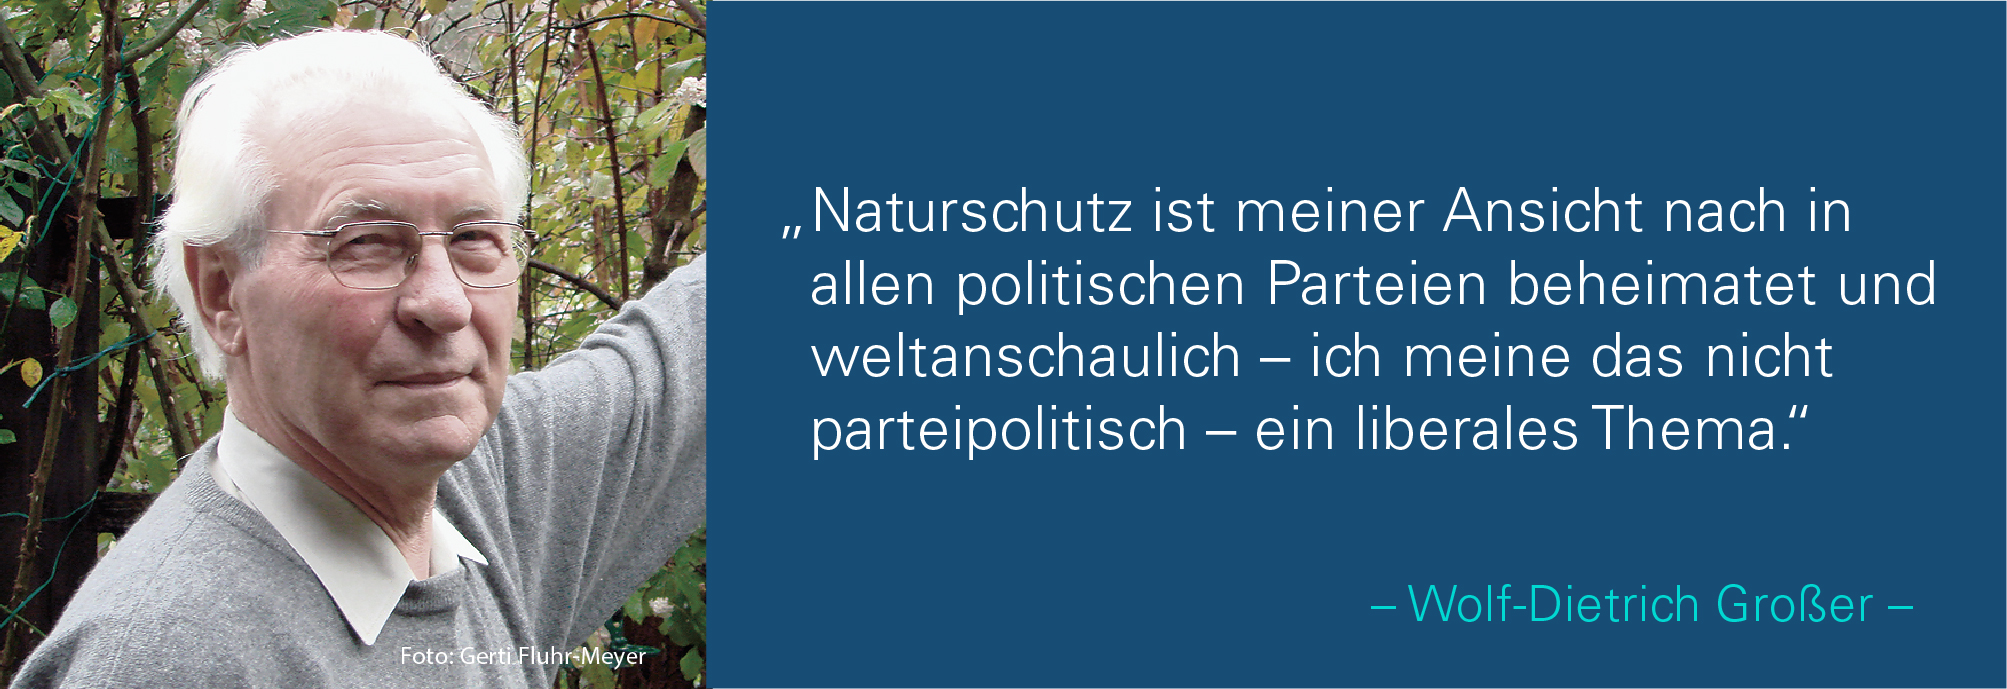 Portraitbild von Wolf-Dietrich Großer mit seinem Zitat: Naturschutz ist meiner Ansicht nach in allen politischen Parteien beheimatet und weltanschaulich – ich meine das nicht parteipolitisch ein liberales Thema